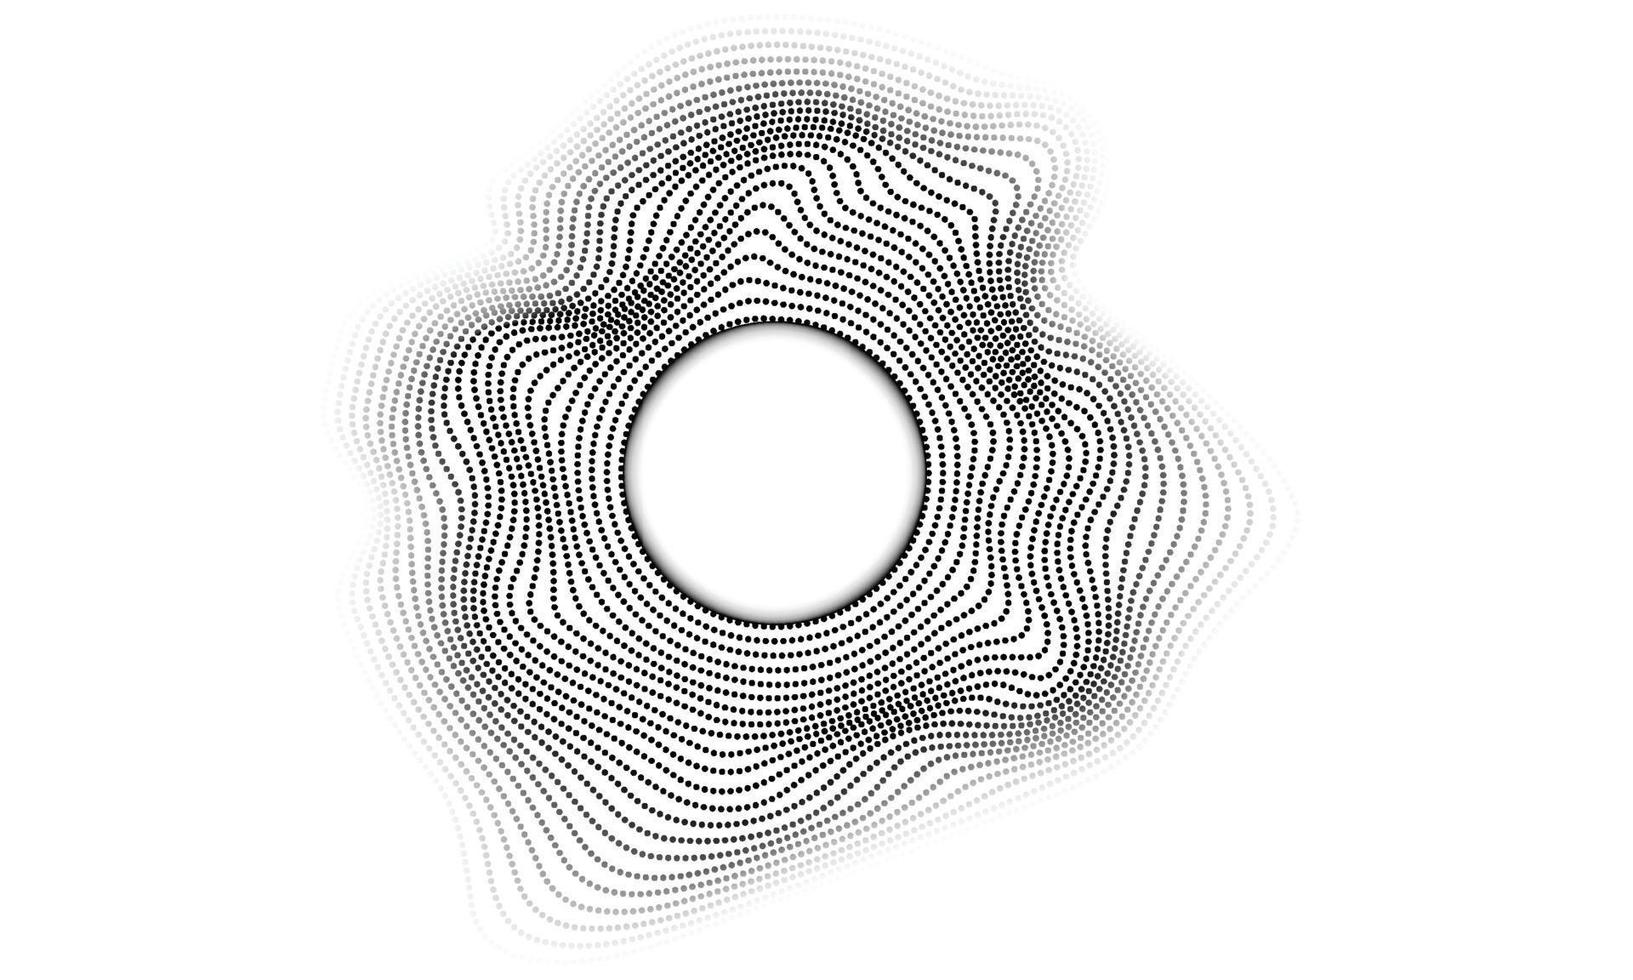 abstrakt svart prickigt halvtonsmönster på vit bakgrund. vektor